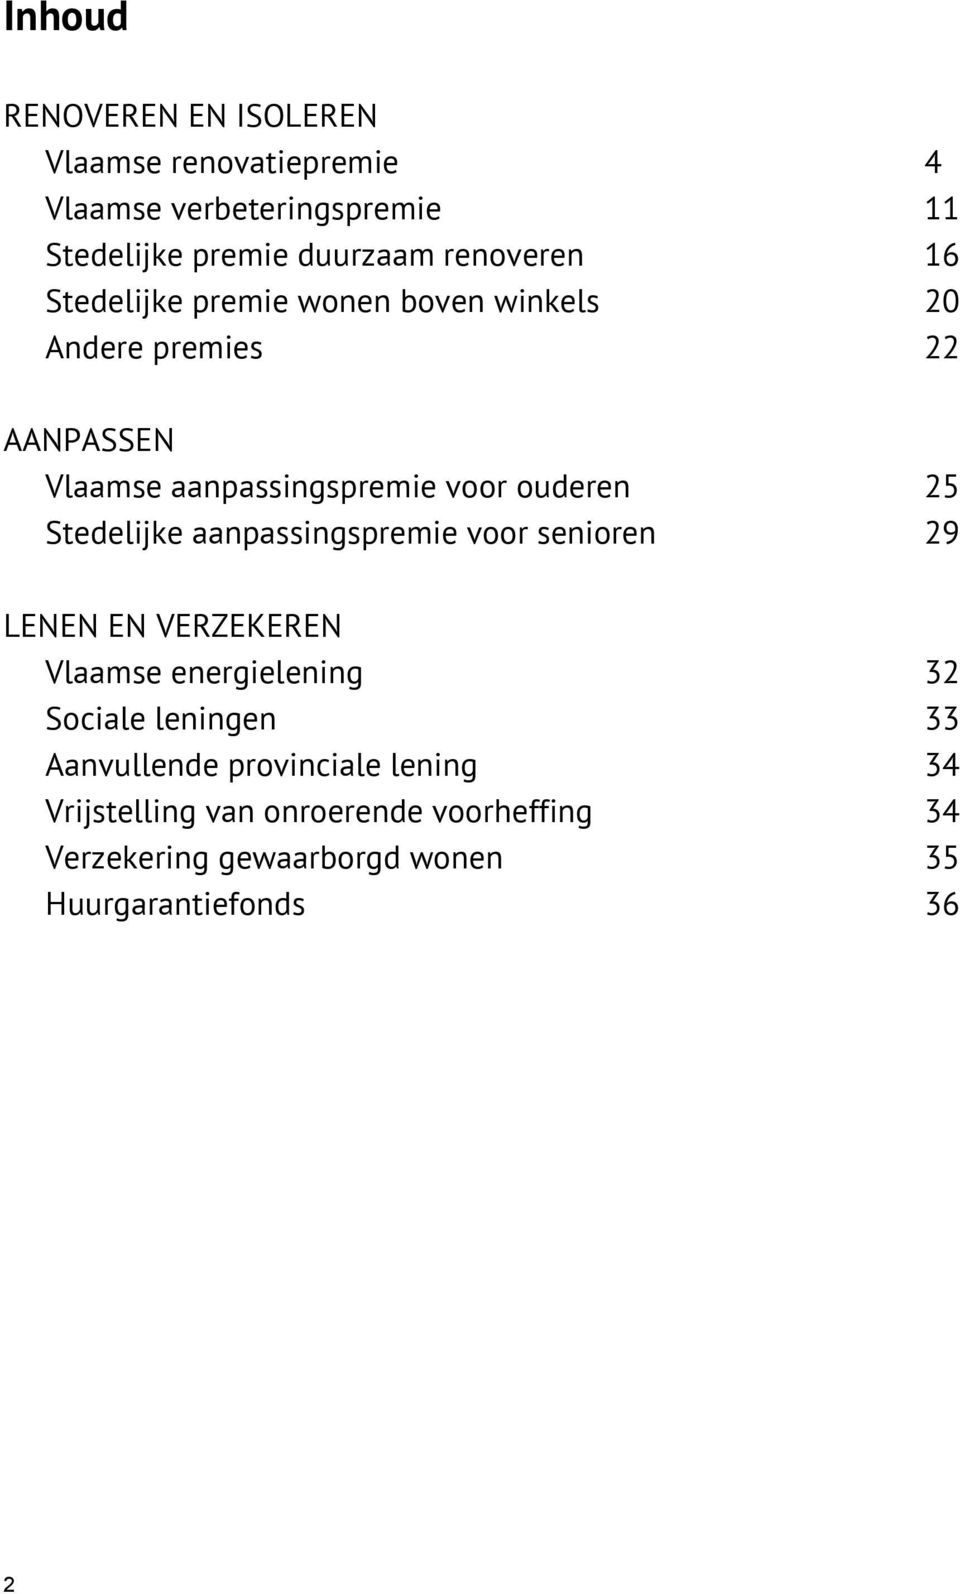 ouderen 25 Stedelijke aanpassingspremie voor senioren 29 LENEN EN VERZEKEREN Vlaamse energielening 32 Sociale leningen